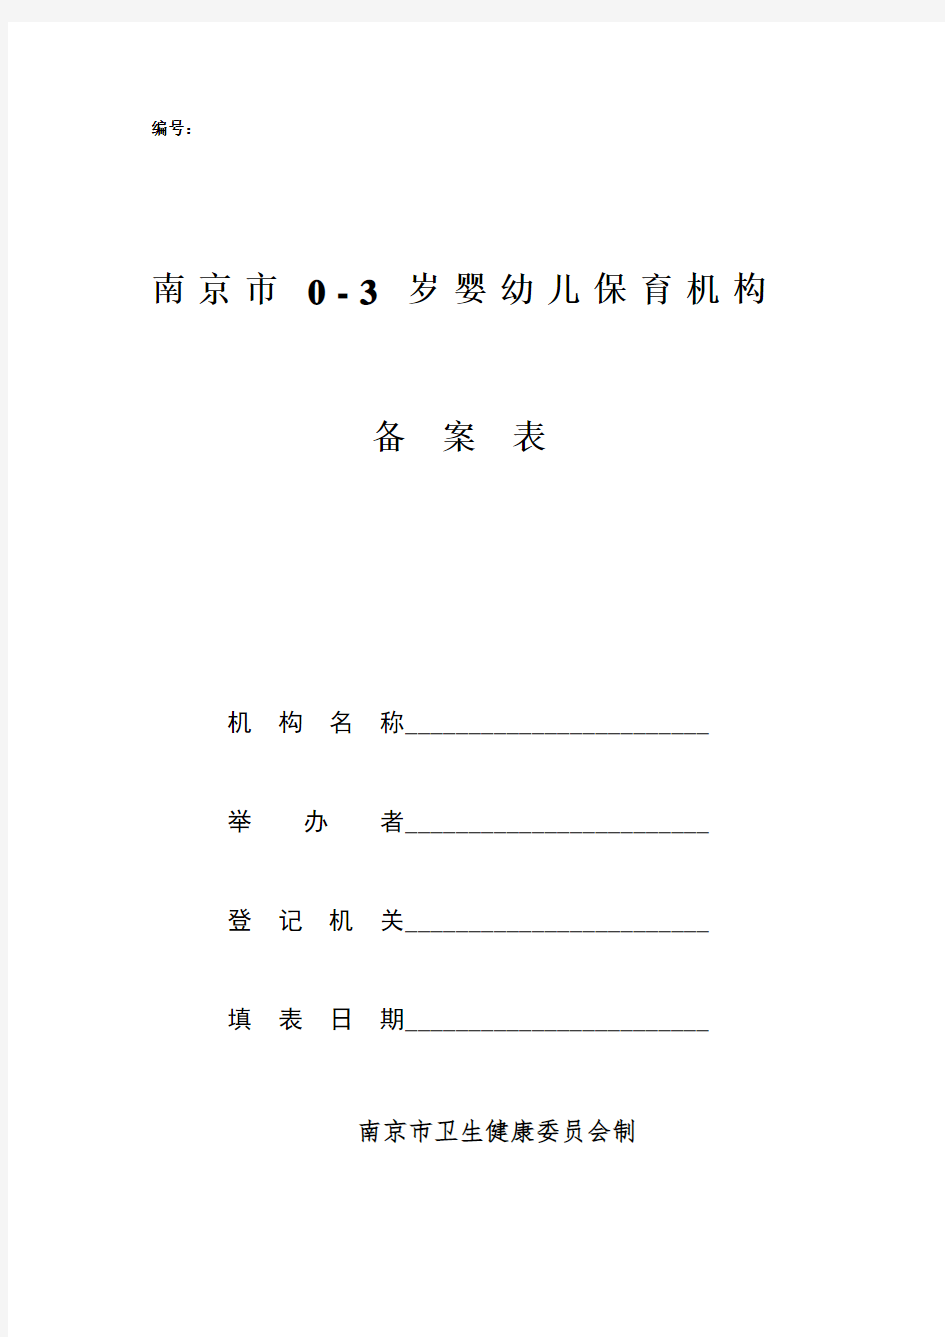 南京_0-3岁婴幼儿保育机构备案表